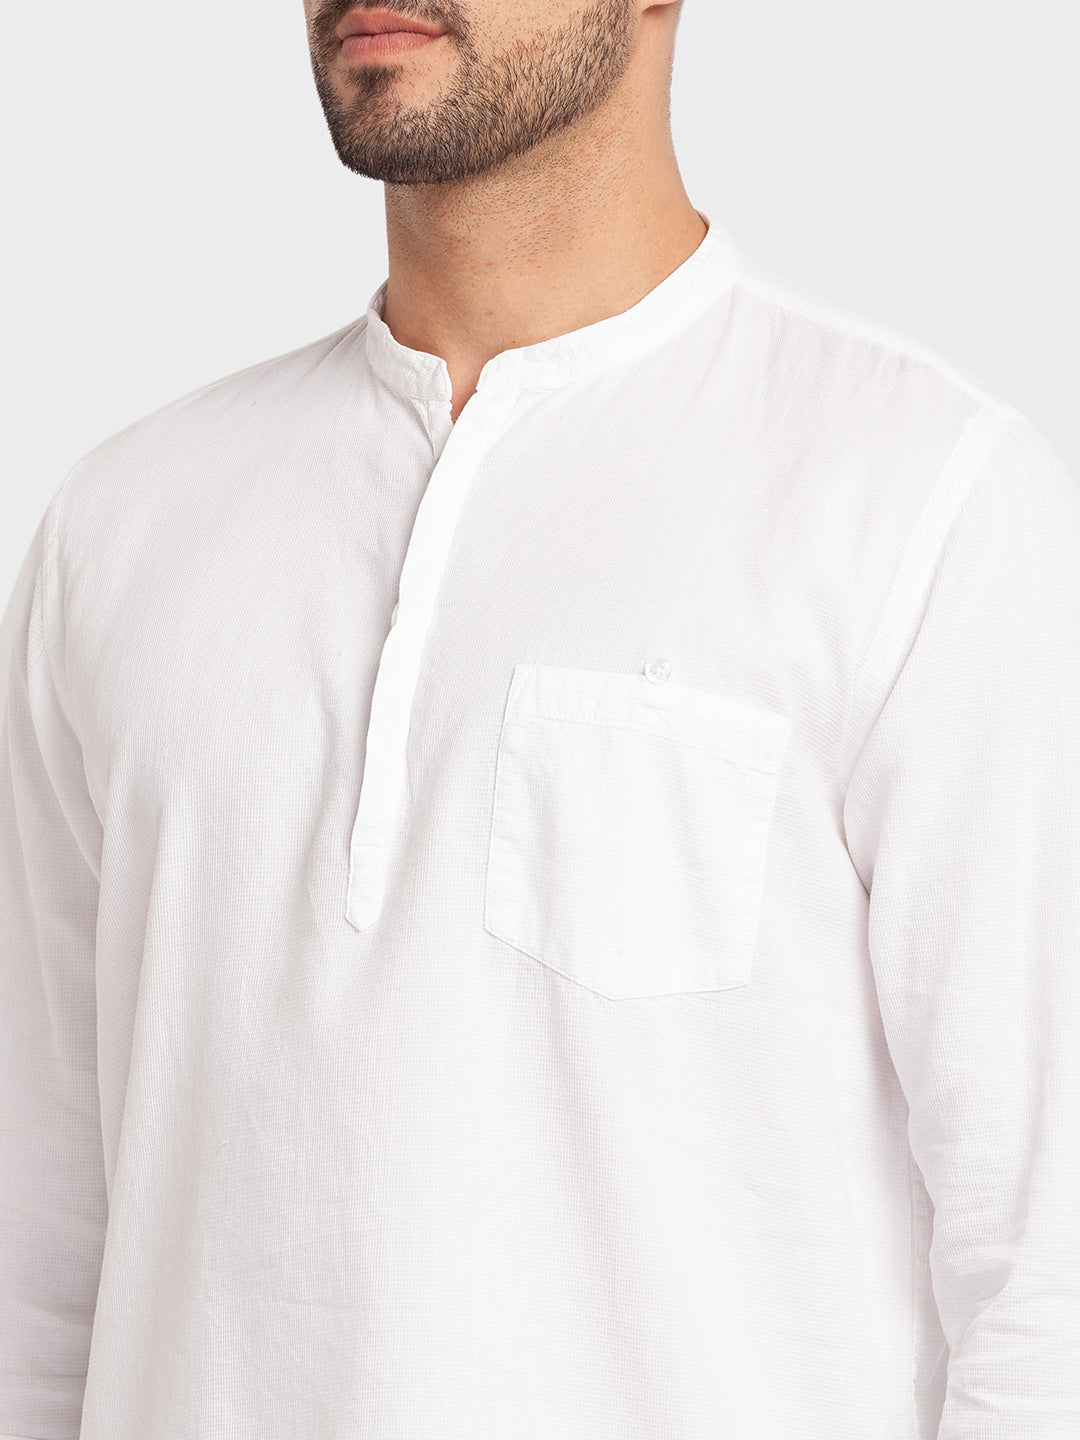 Spykar White Cotton Full Sleeve Plain Shirt Kurta For Men